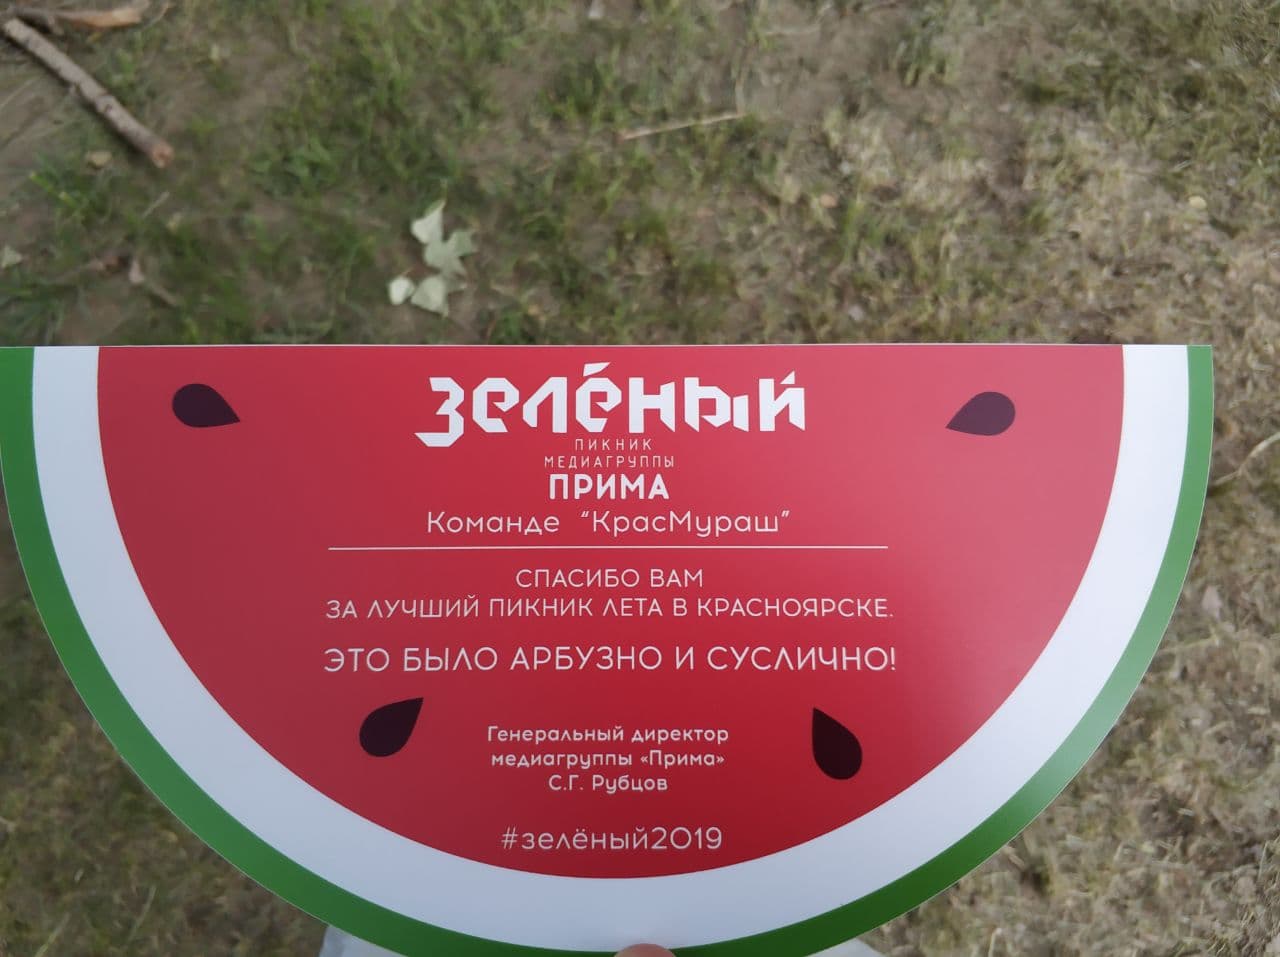 Фестиваль "Зеленый" на острове Татышева 2019г.